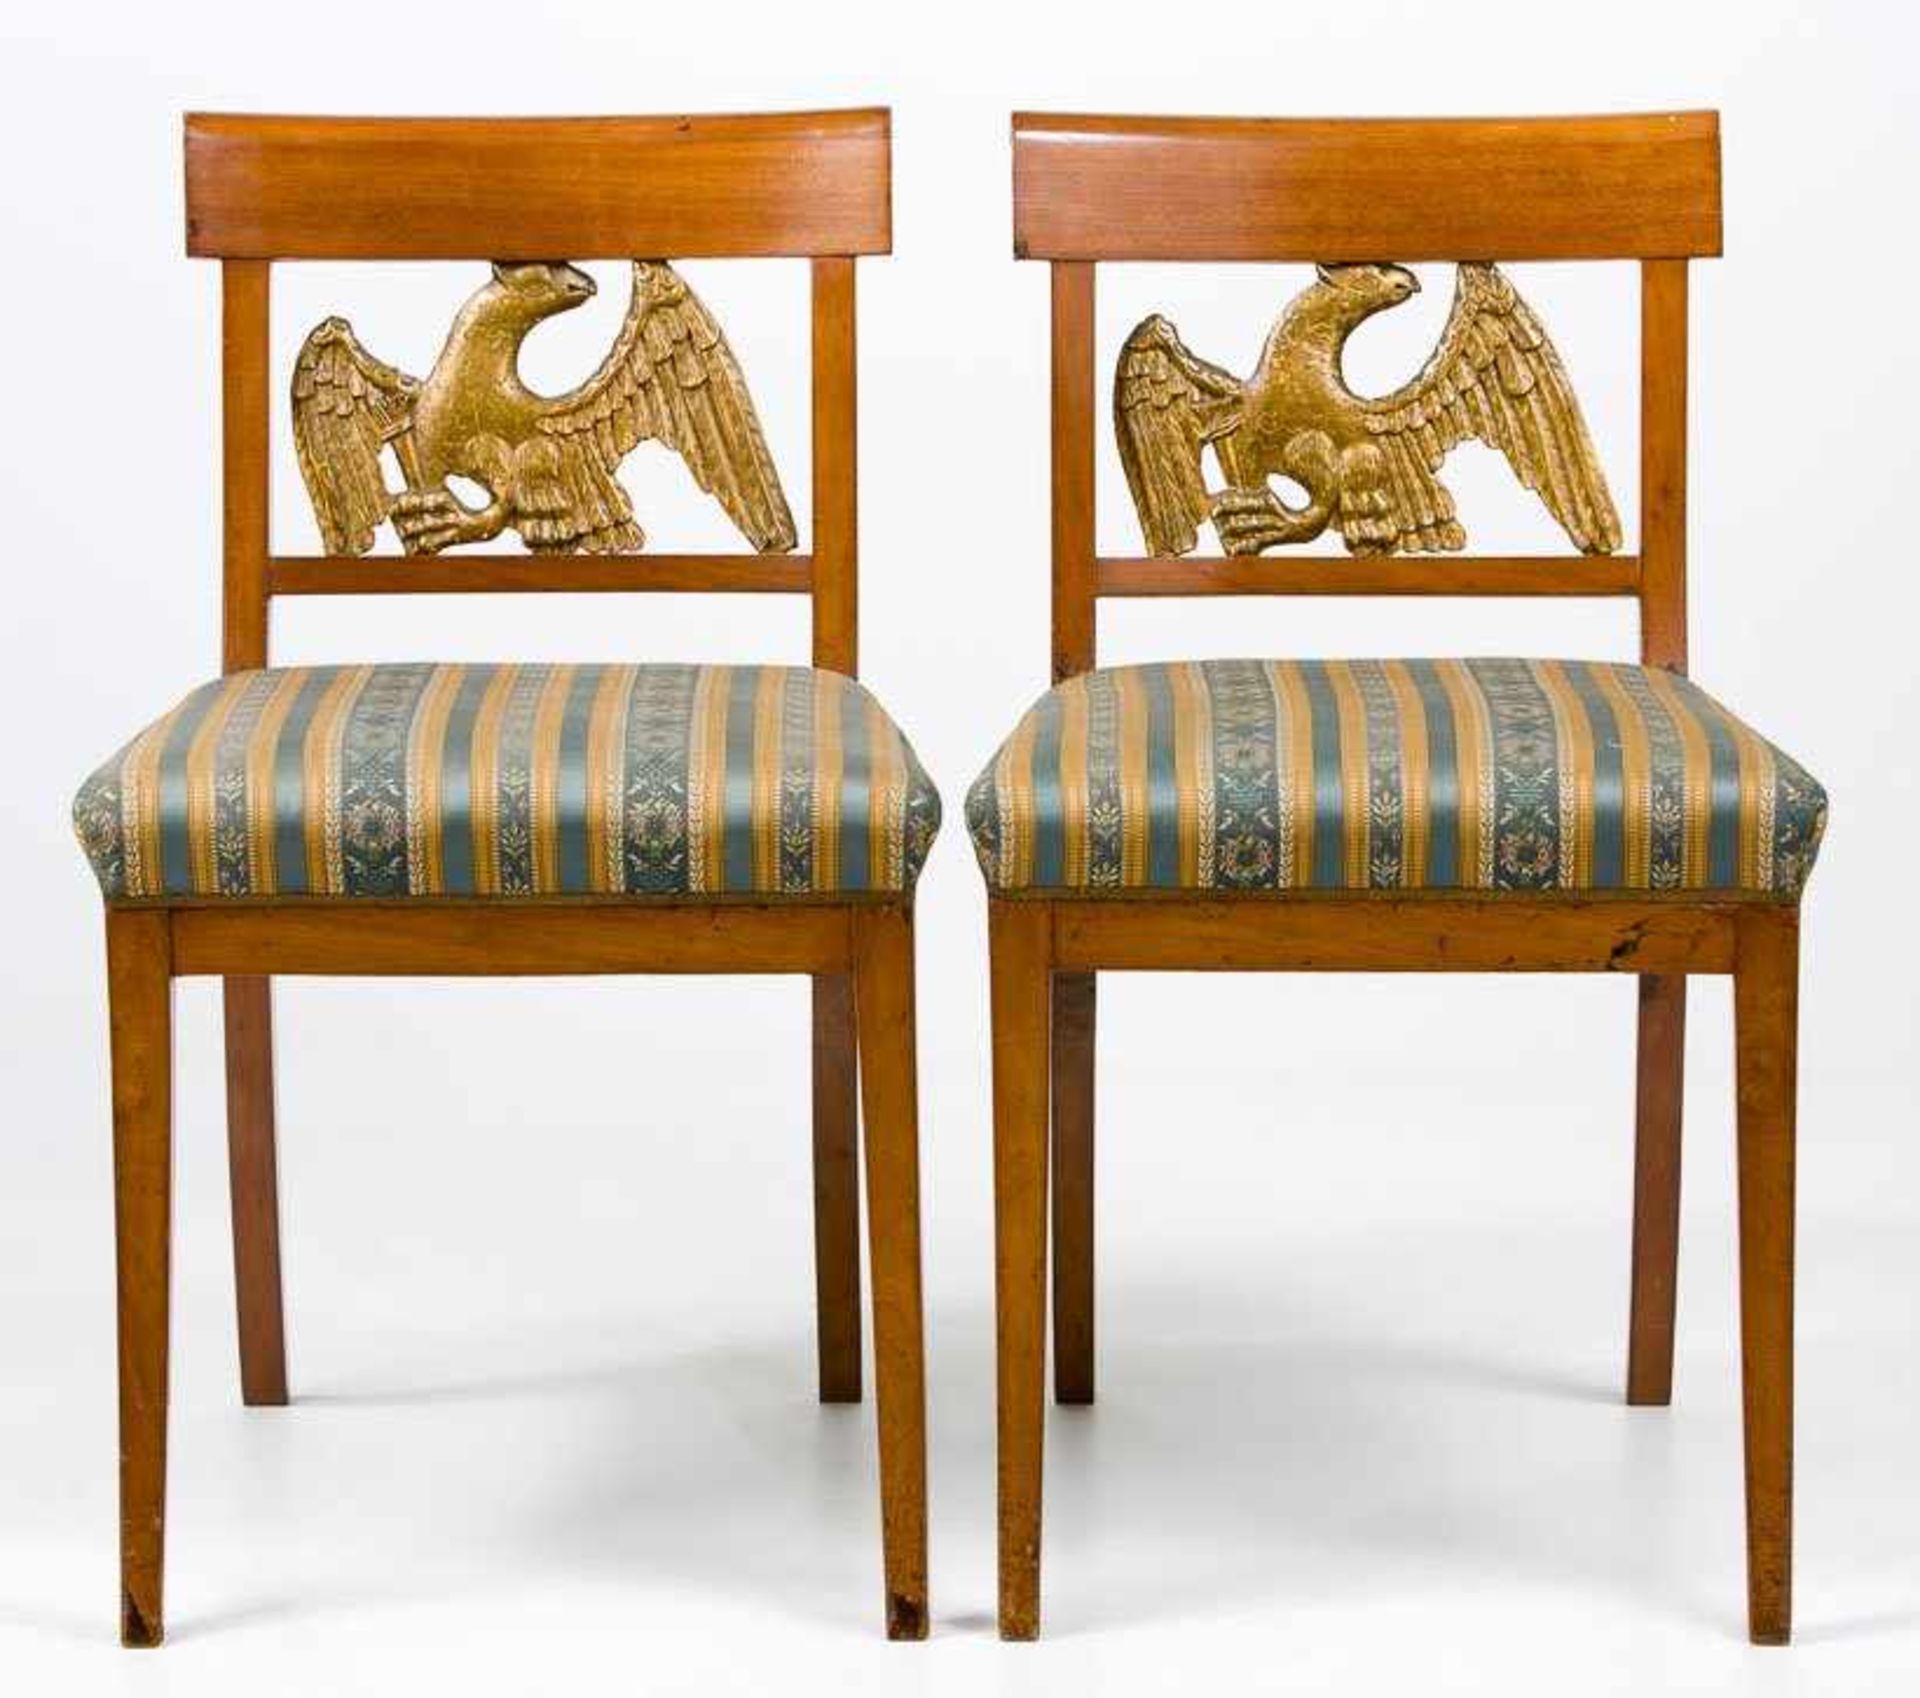 Zwei Biedermeier-Stühle. Nussbaum. Schlichtes Gestell mit vergoldeter Verstrebung in Form eines